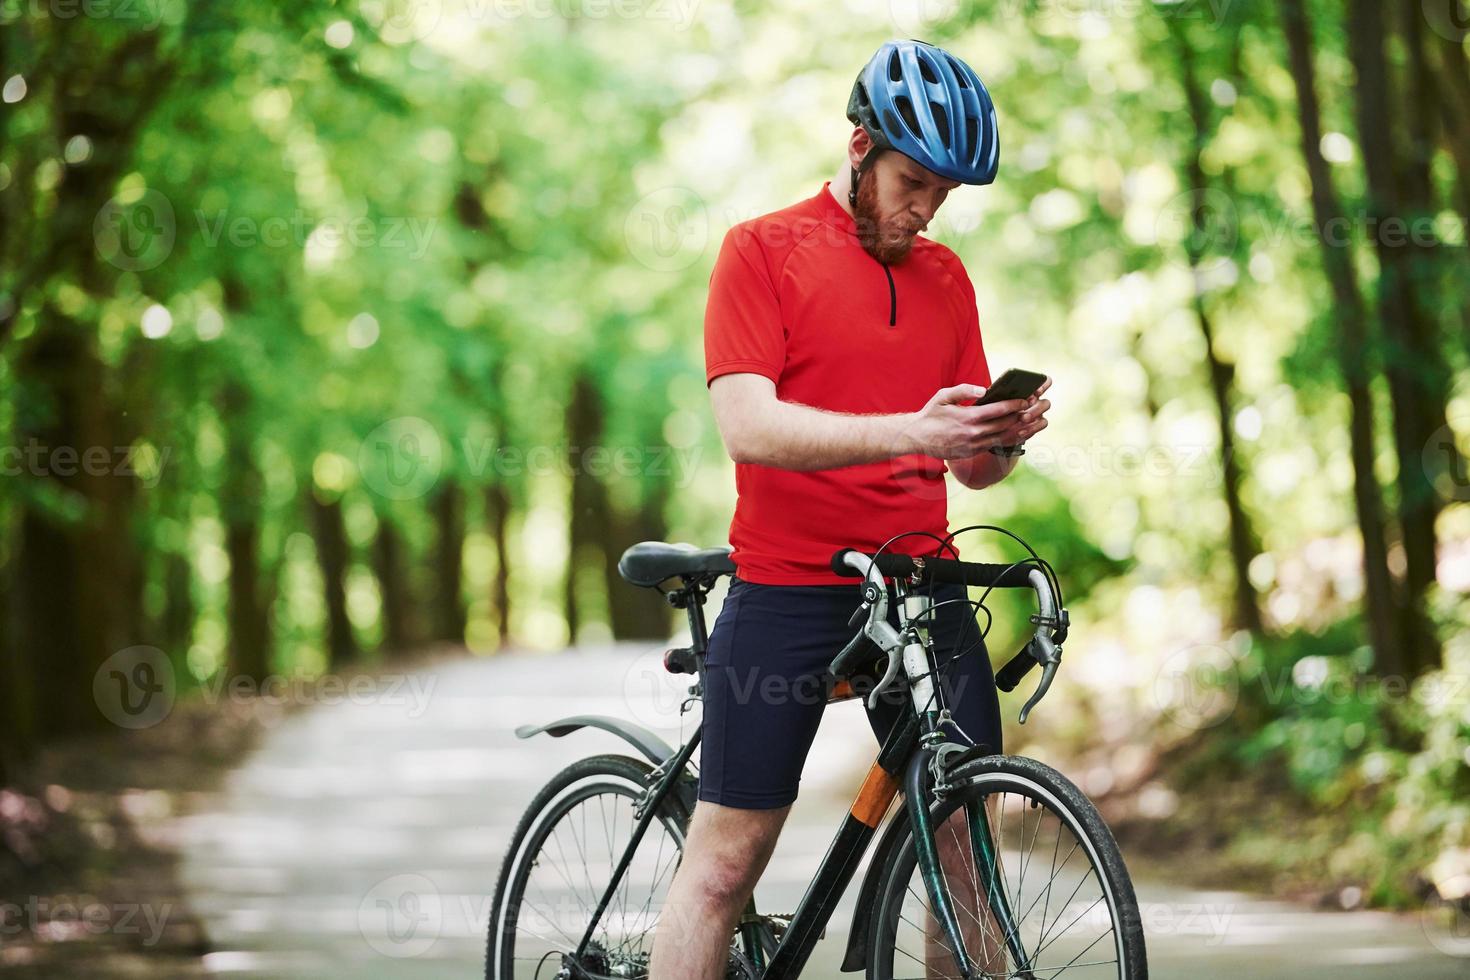 chattare in internet. il ciclista in bicicletta è sulla strada asfaltata nella foresta in una giornata di sole foto